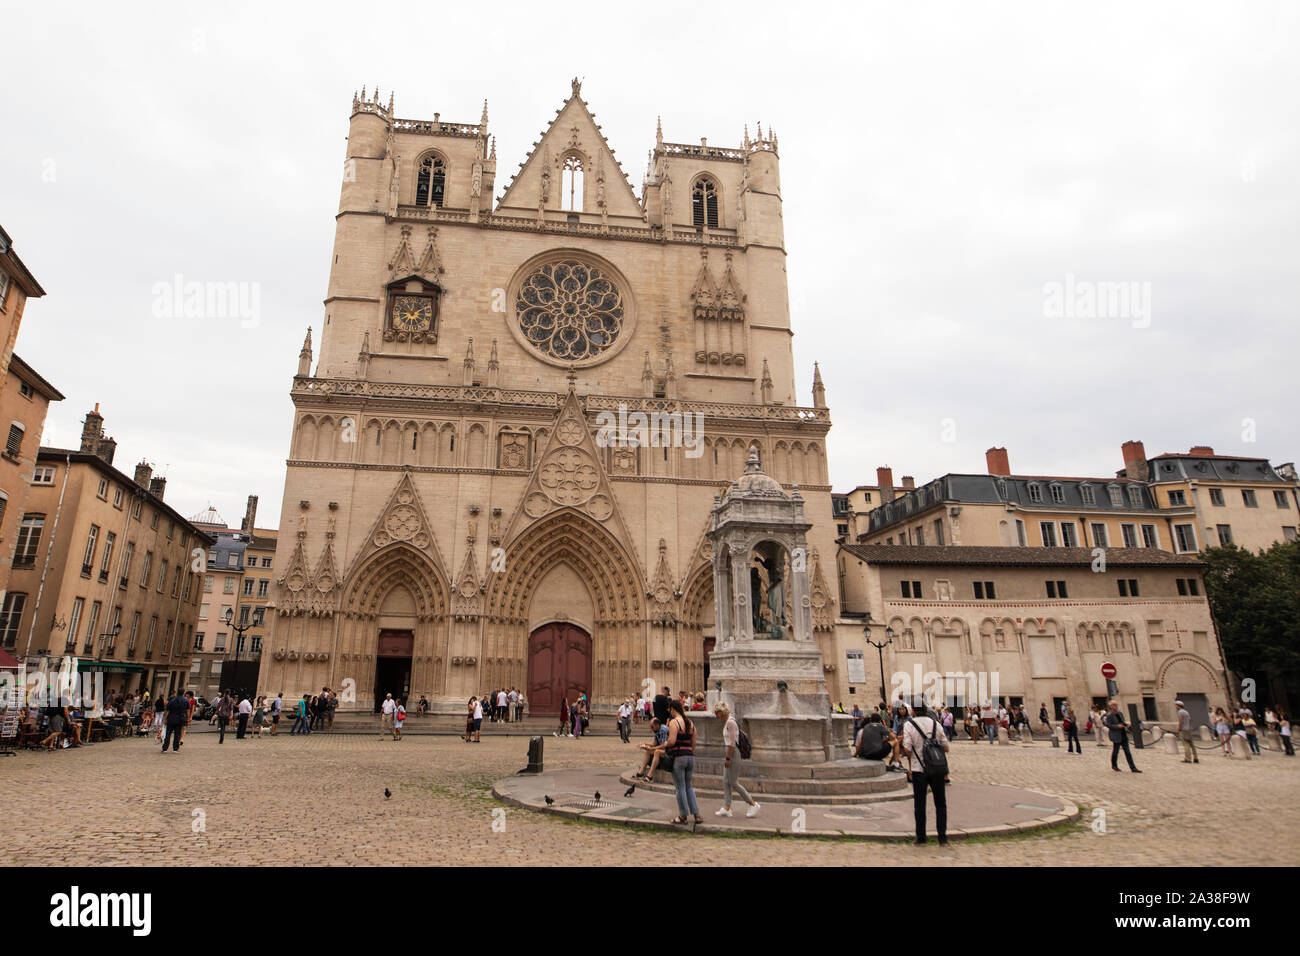 Ein bewölkter Tag im Cathédrale Saint-Jean-Baptiste (Kathedrale der Hl. Johannes der Täufer) in Lyon, Frankreich. Stockfoto